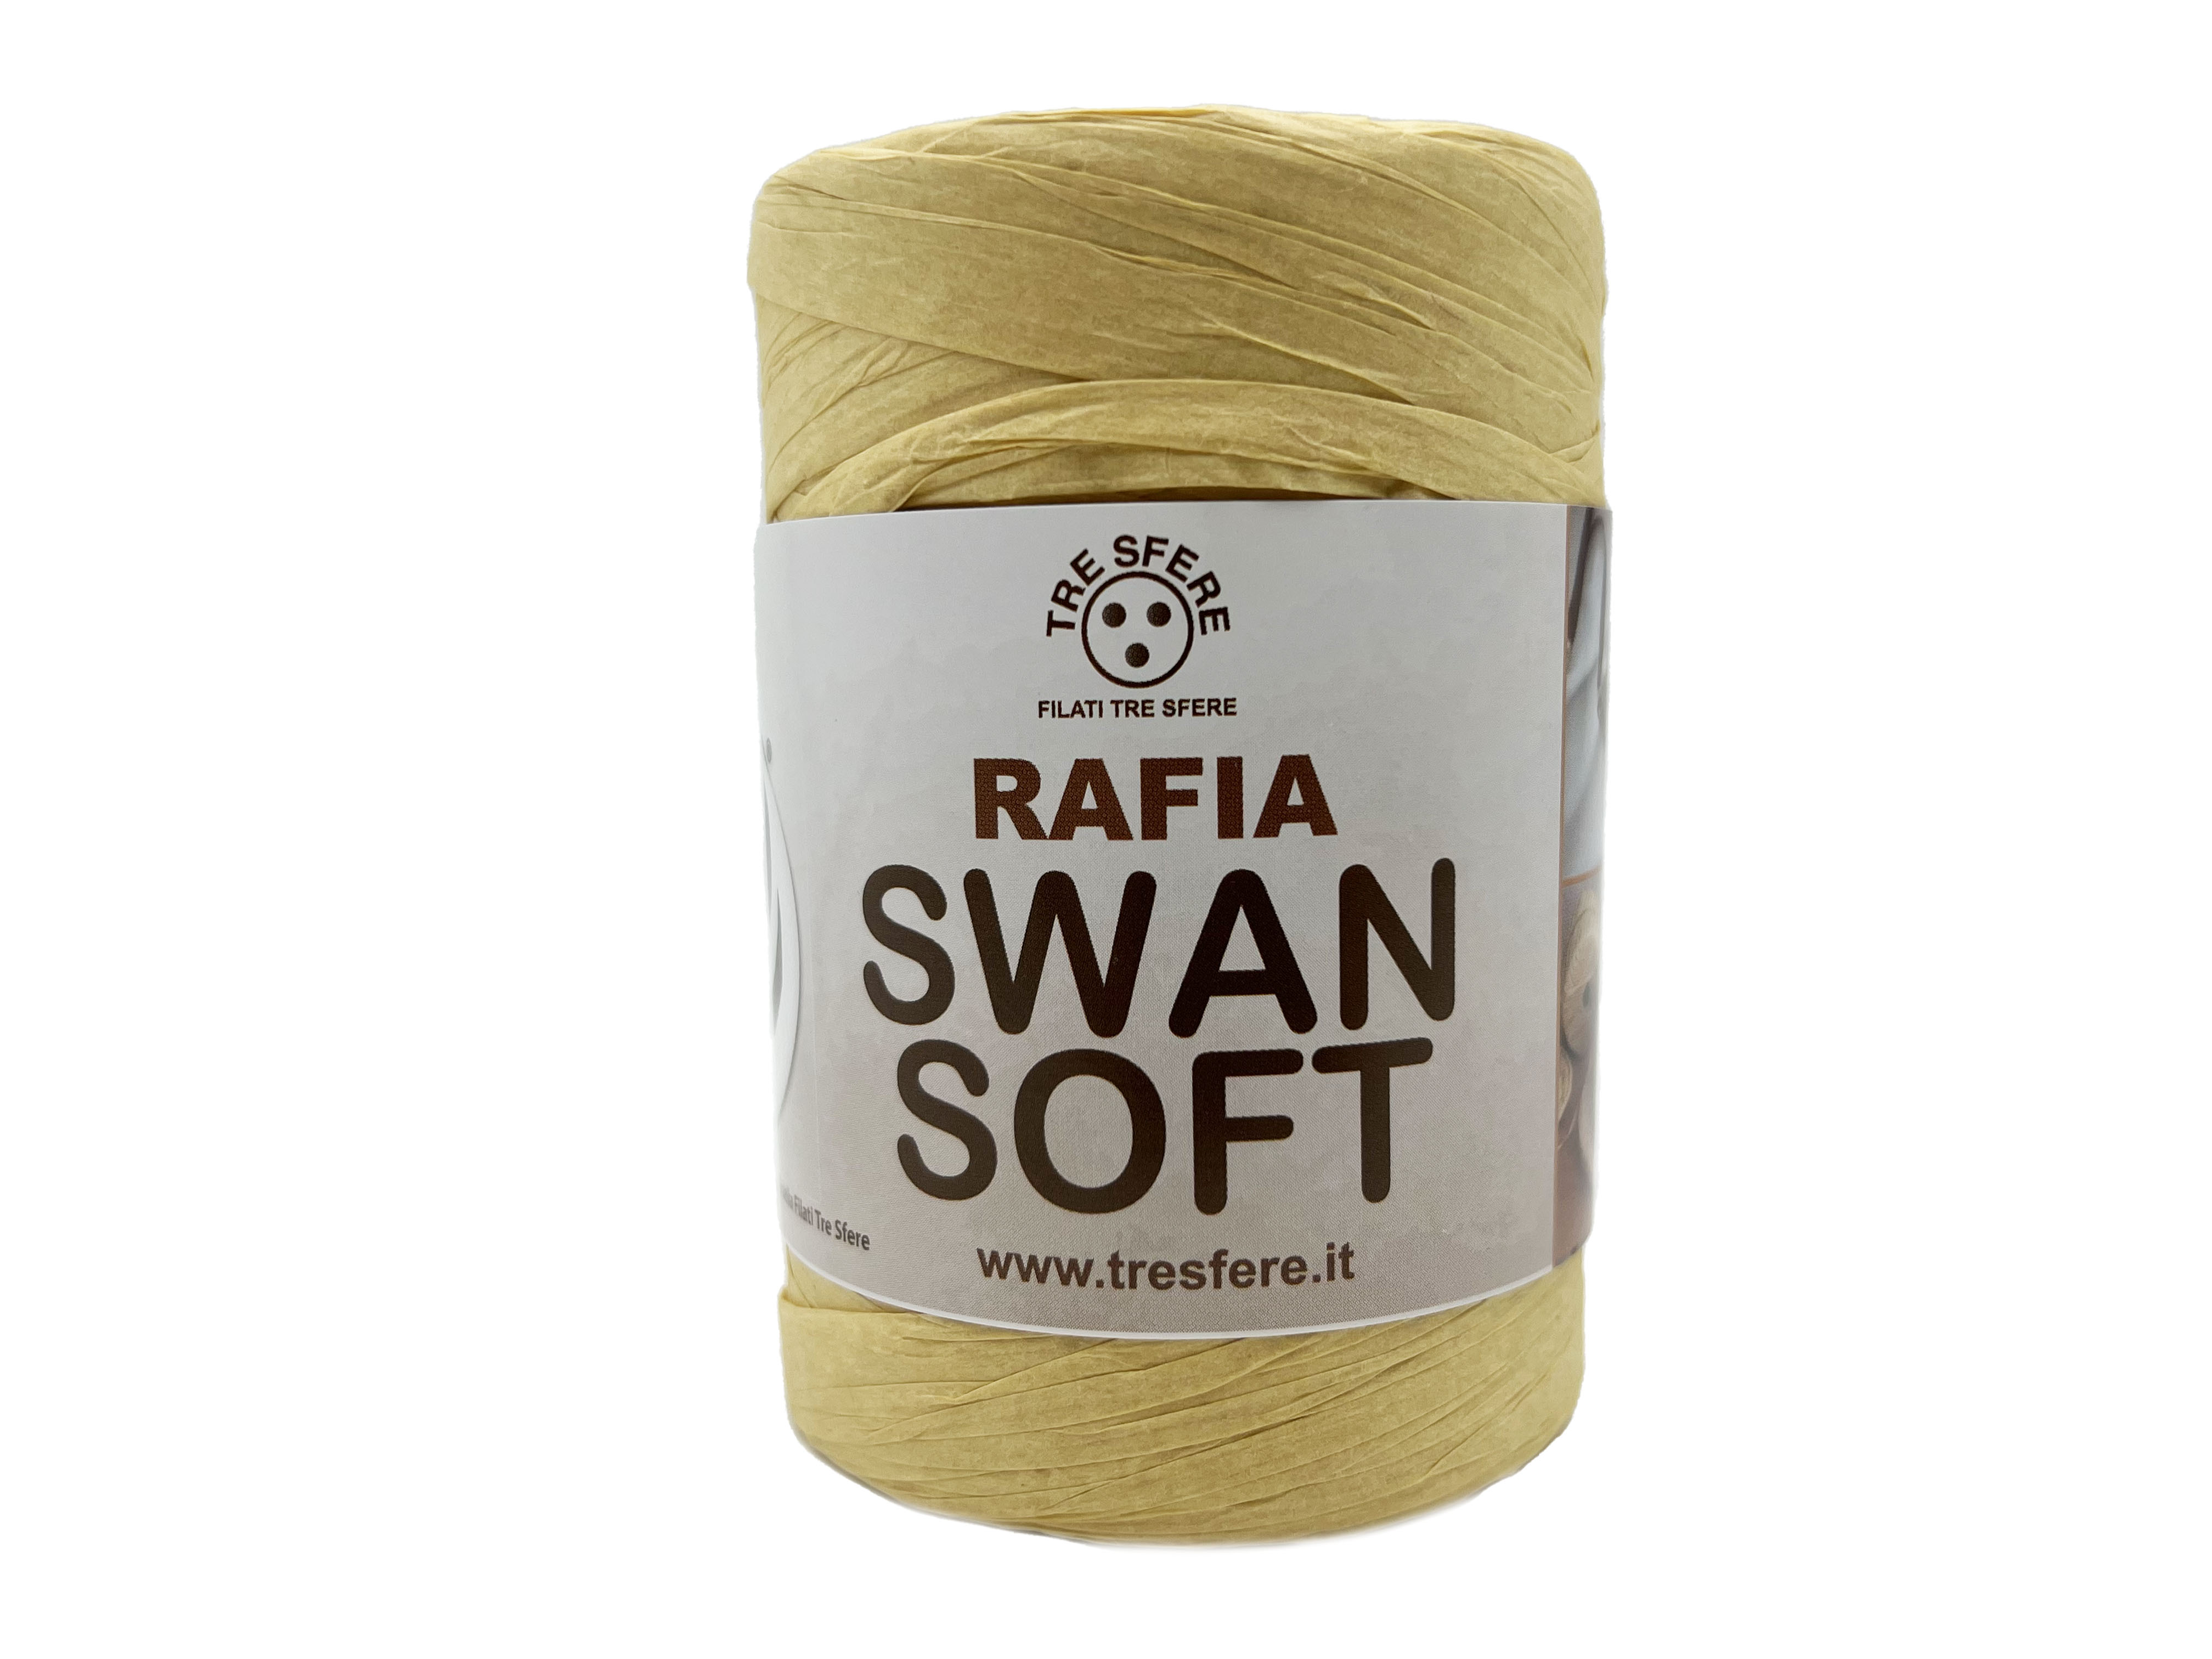 Lýko Rafia Swan Soft přírodní